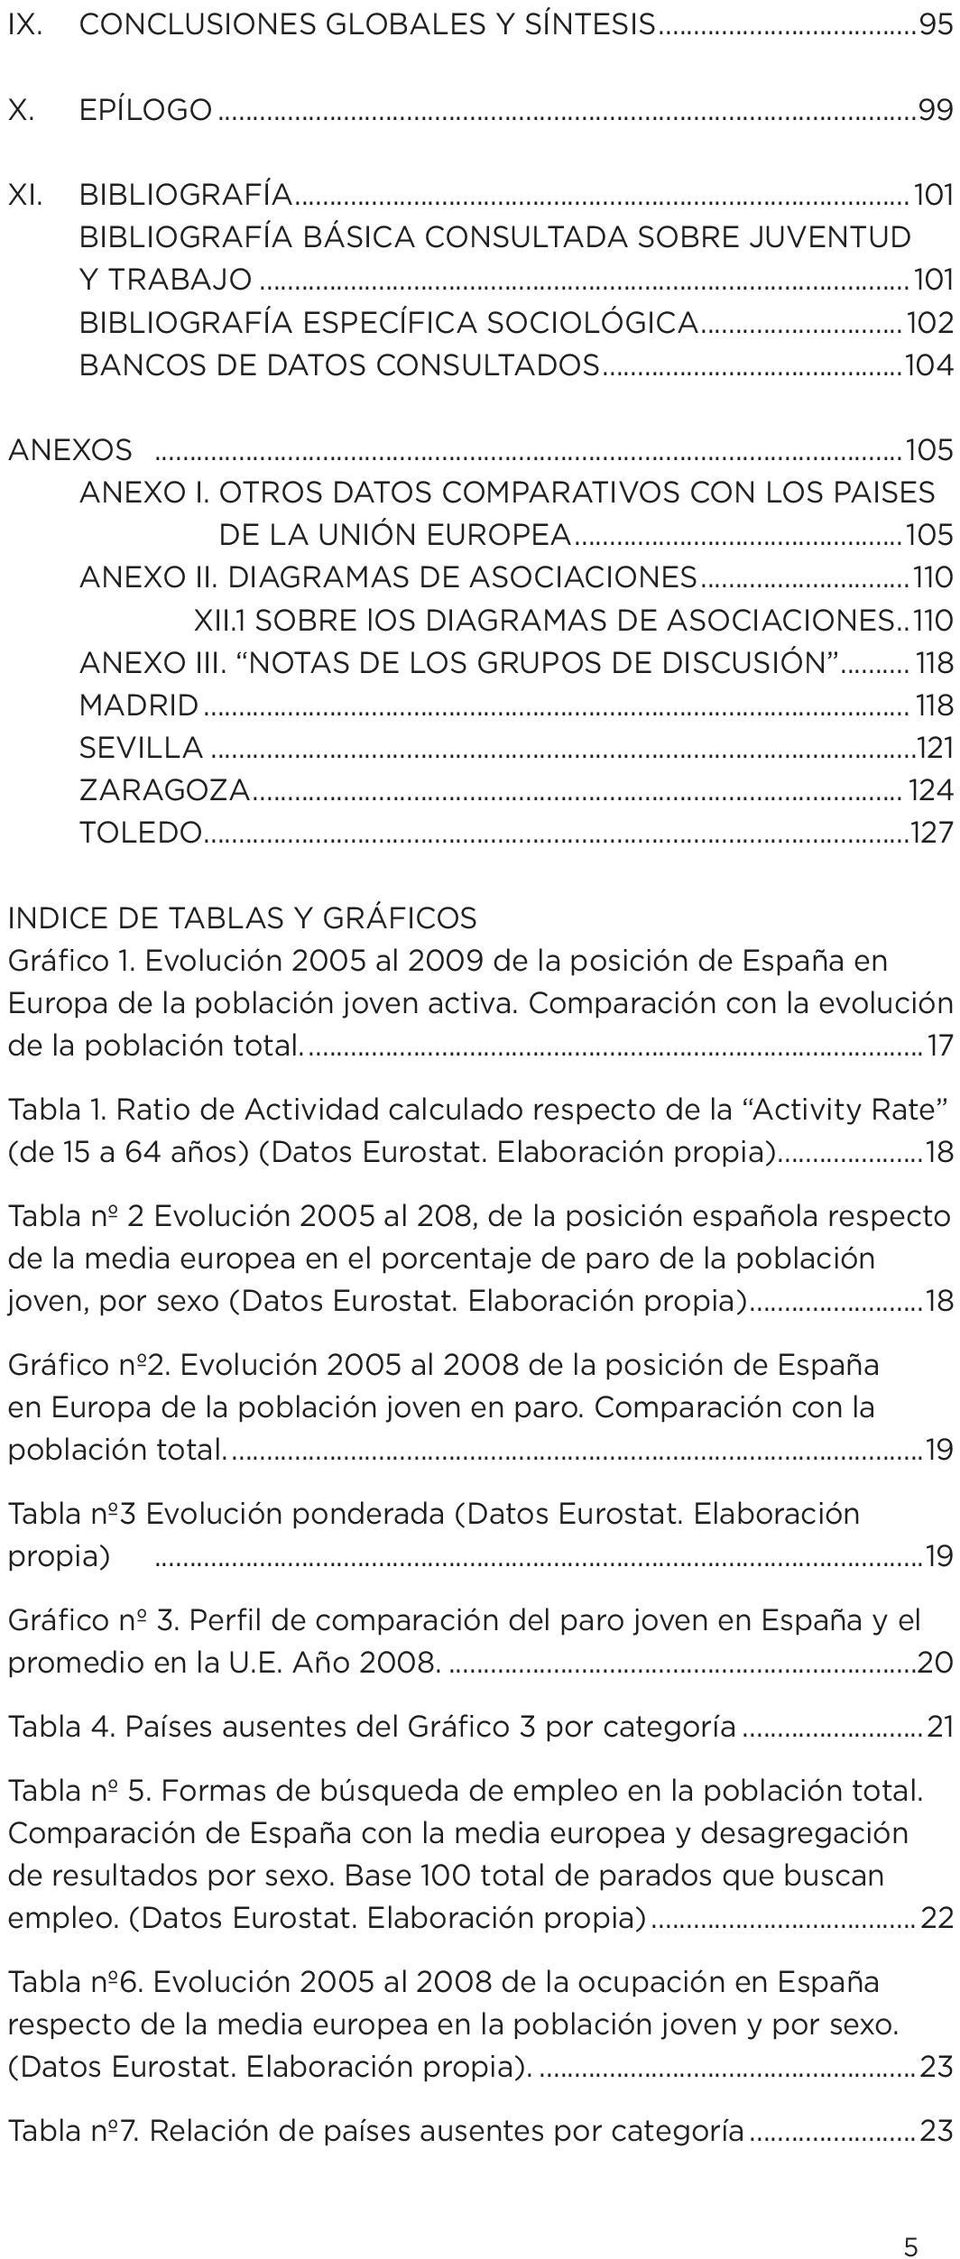 1 SOBRE los DIAGRAMAS DE ASOCIACIONES.. 110 ANEXO III. NOTAS DE LOS GRUPOS DE DISCUSIÓN... 118 MADRID... 118 SEVILLA...121 ZARAGOZA... 124 TOLEDO...127 INDICE DE TABLAS Y GRÁFICOS Gráfico 1.